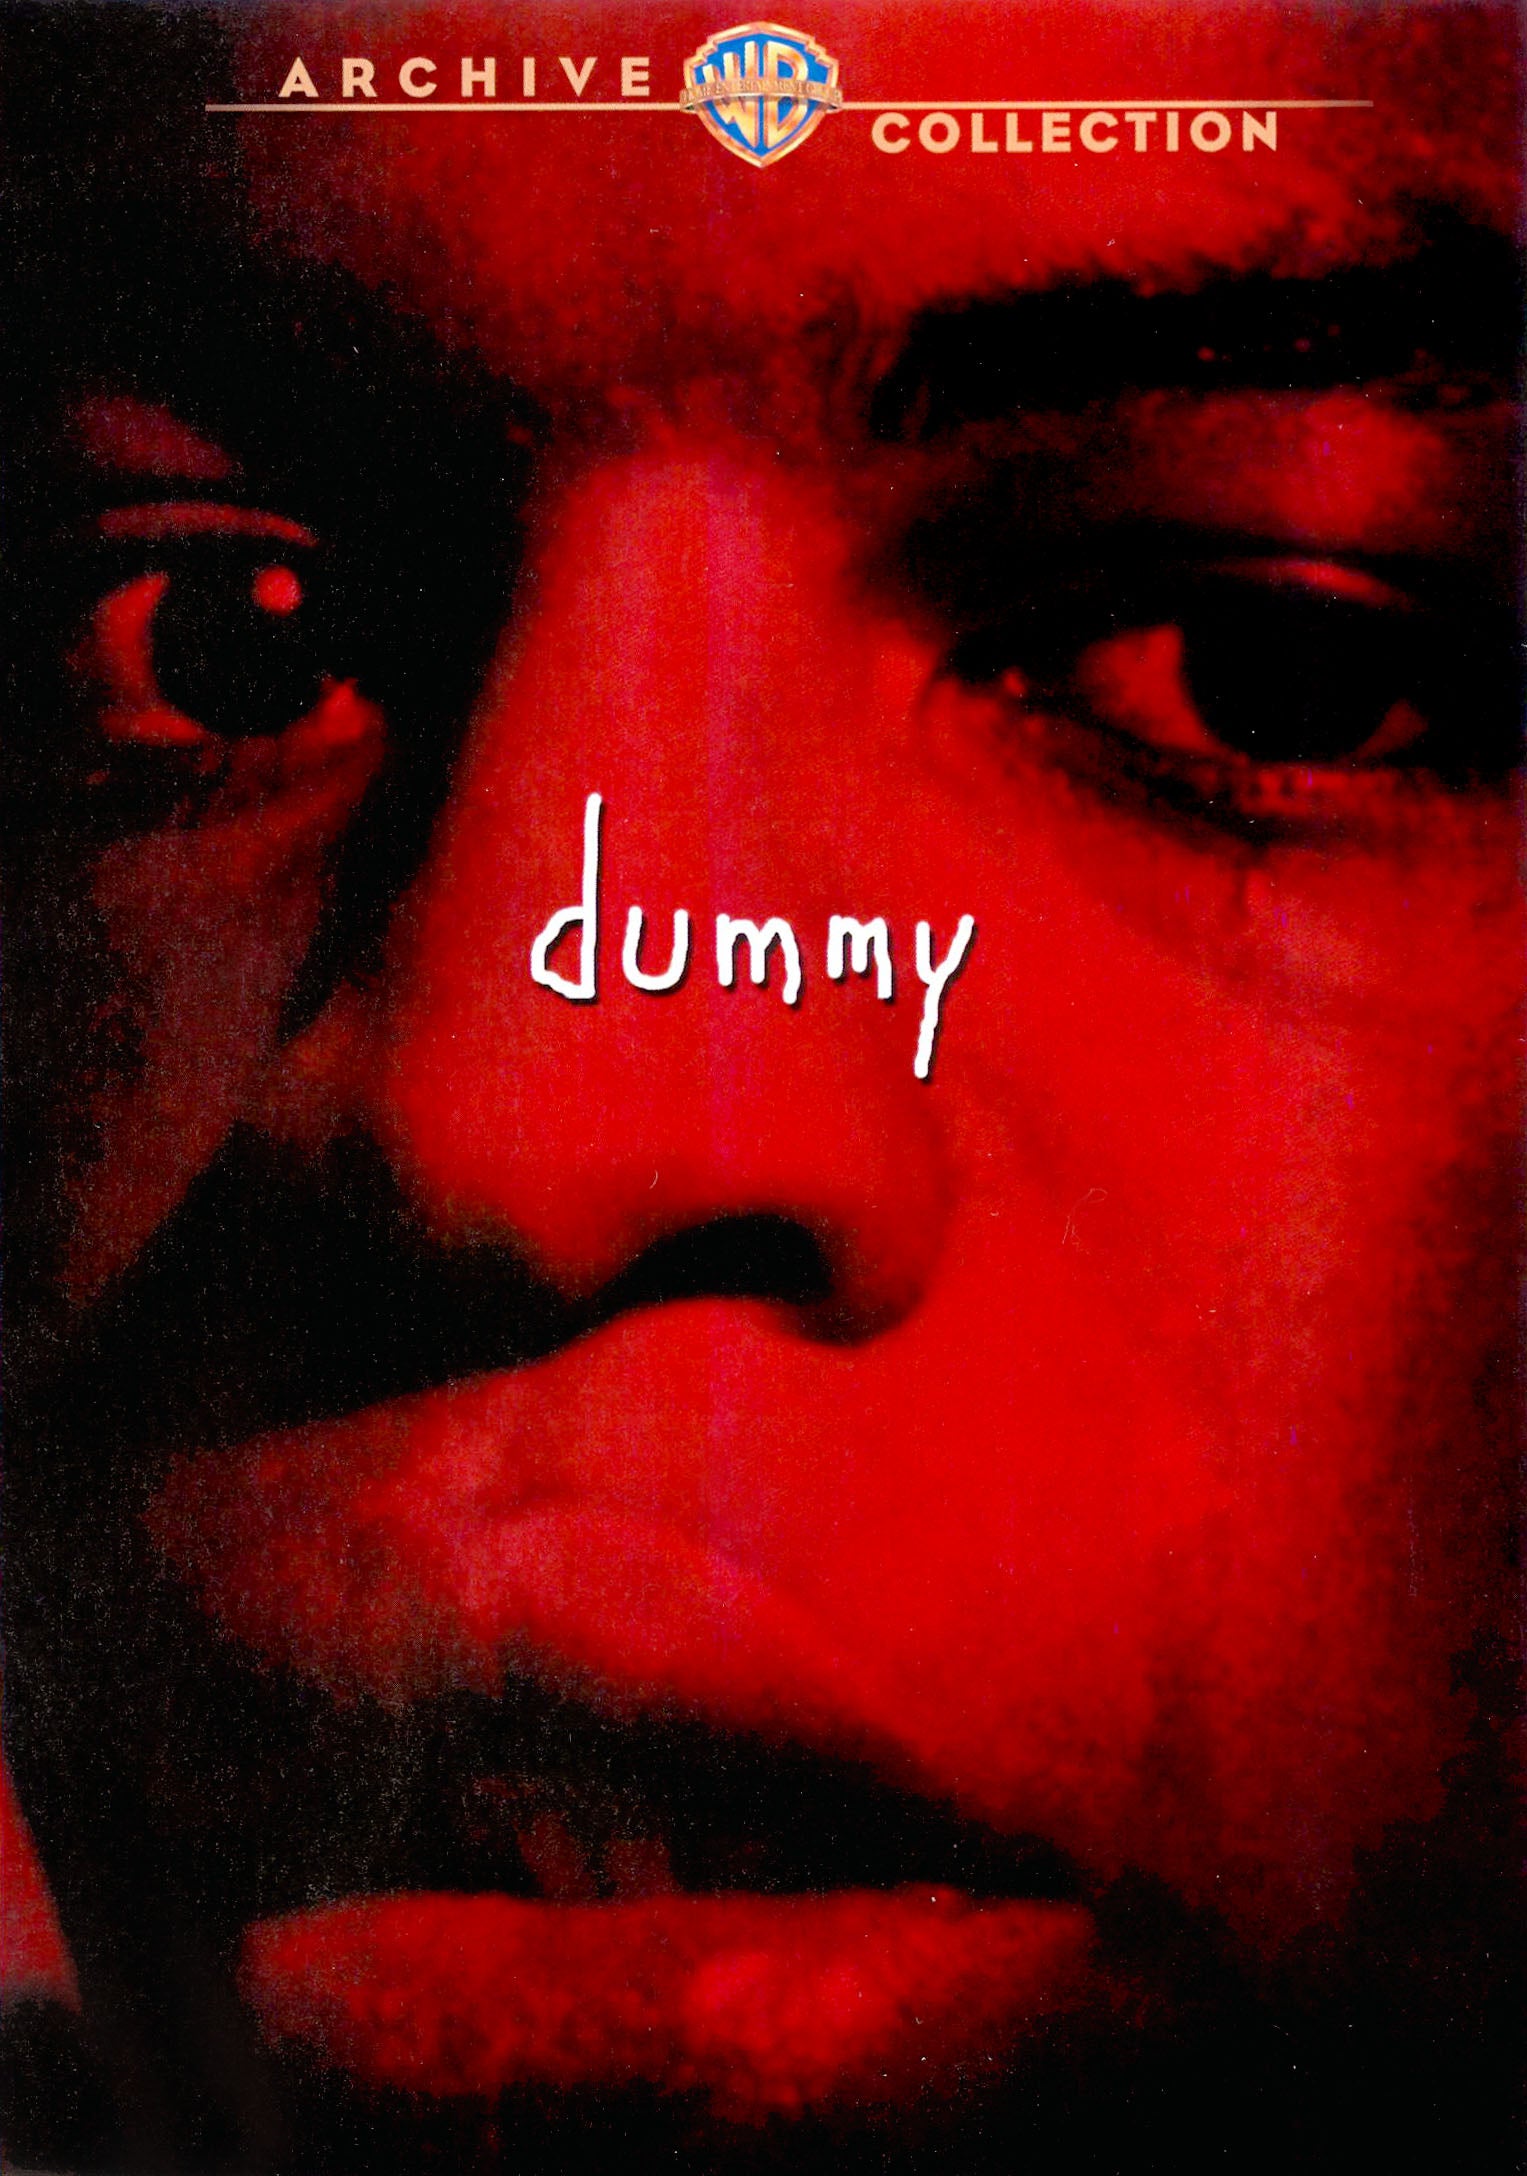 Dummy cover art